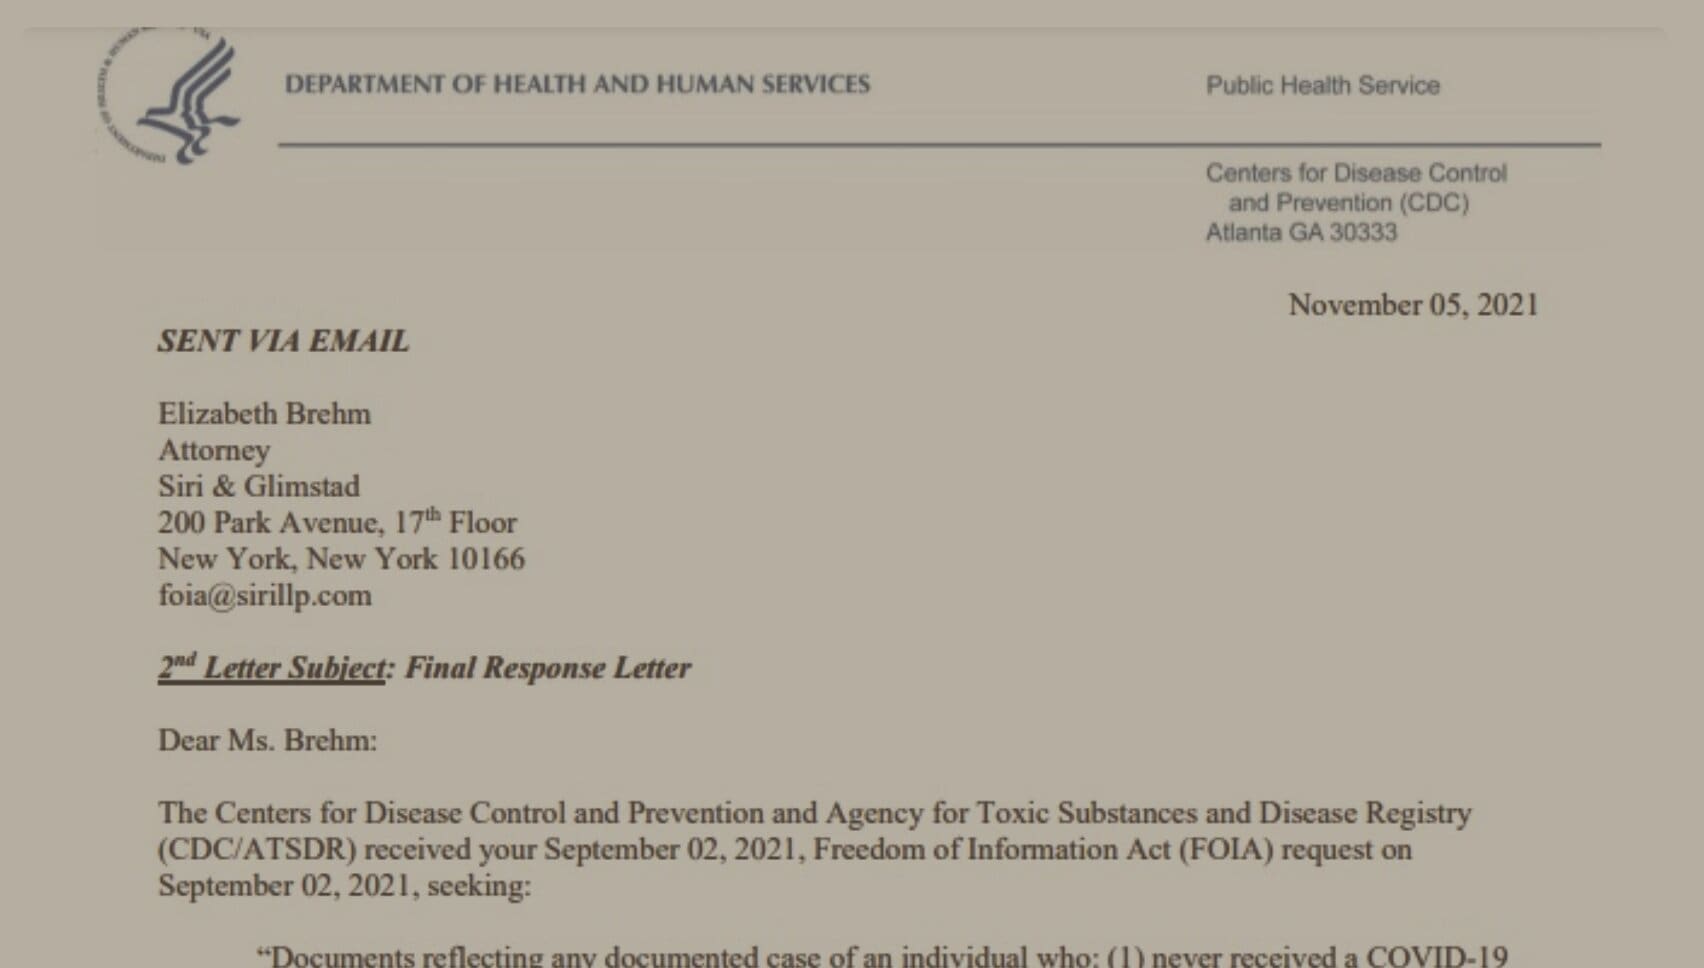 ΜΠΟΥΜ!!! – Σοκ: Το CDC παραδέχεται ότι δεν έχει κανένα αρχείο μη εμβολιασμένου ατόμου που διαδίδει τον COVID ΜΕΤΑ την ανάρρωση!!!